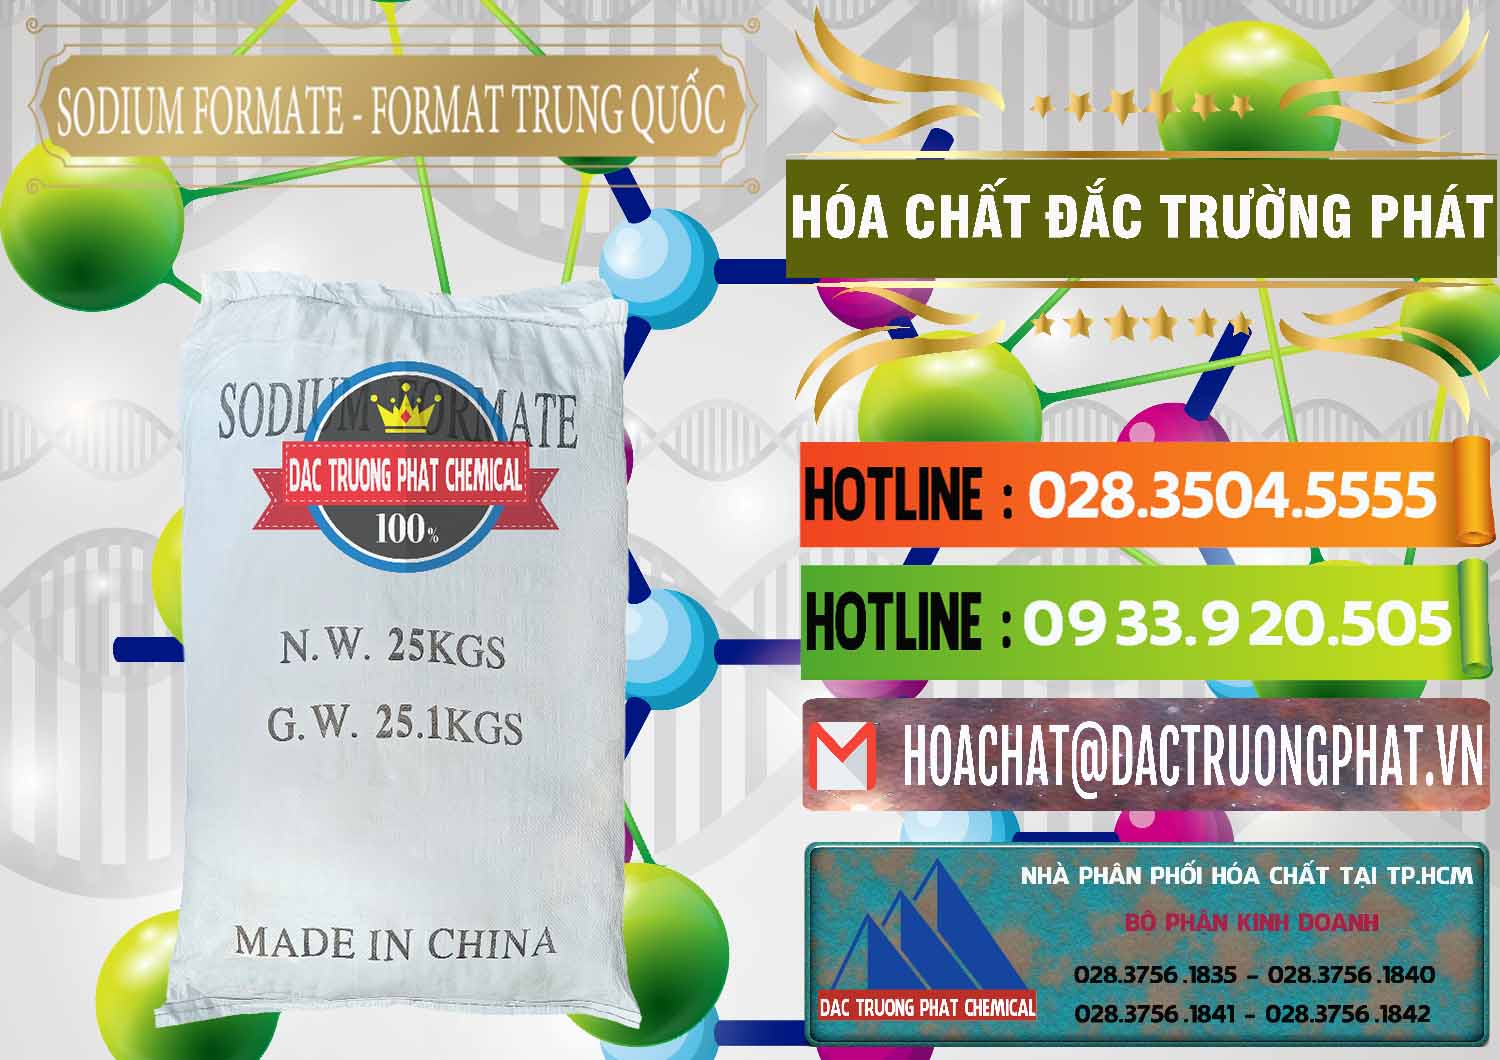 Nhập khẩu ( bán ) Sodium Formate - Natri Format Trung Quốc China - 0142 - Nơi nhập khẩu và phân phối hóa chất tại TP.HCM - cungcaphoachat.com.vn